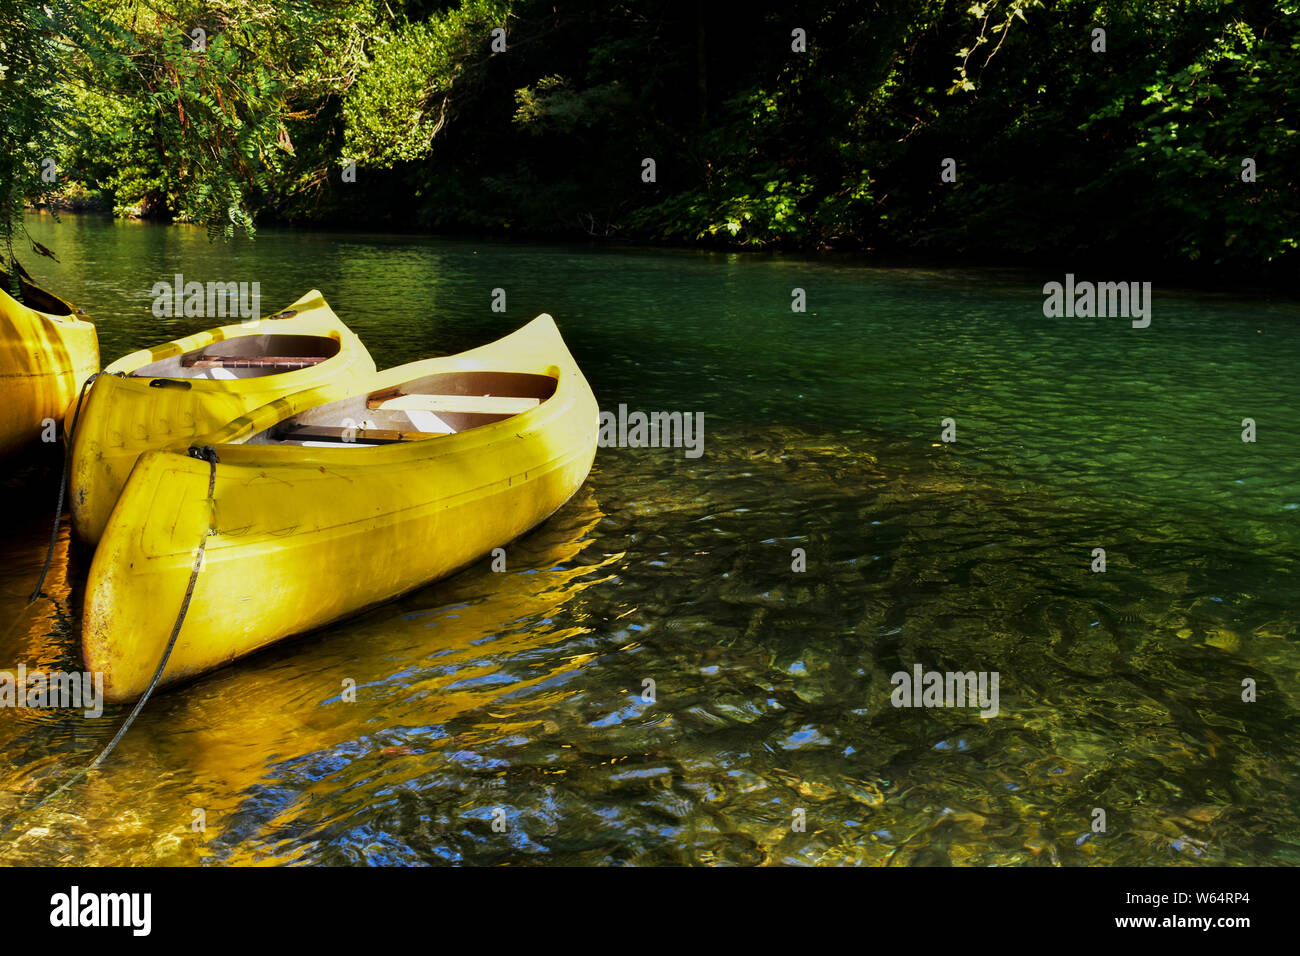 Kajakfahren auf stille Wasser/Gelb Kajak am schönen Green River/konzeptionellen Bild von Sport und Erholung Stockfoto